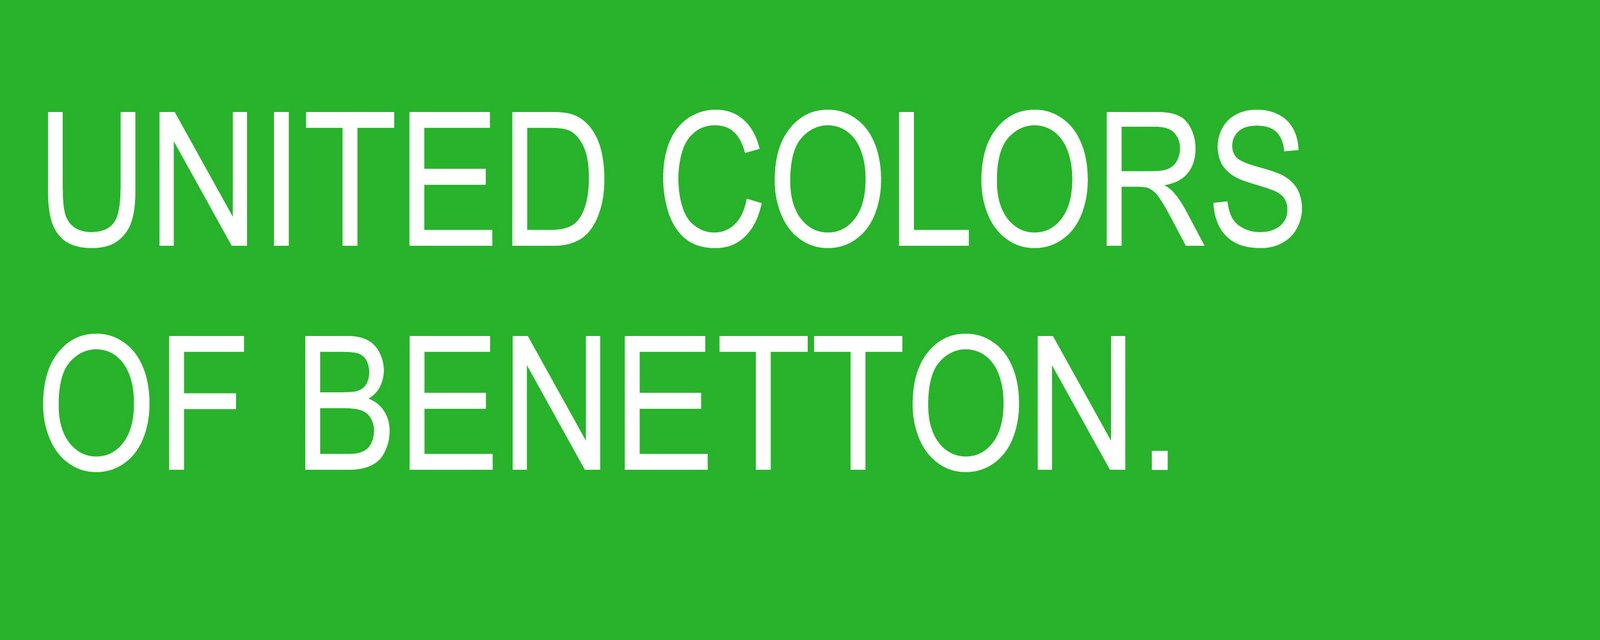 Benetton Logos